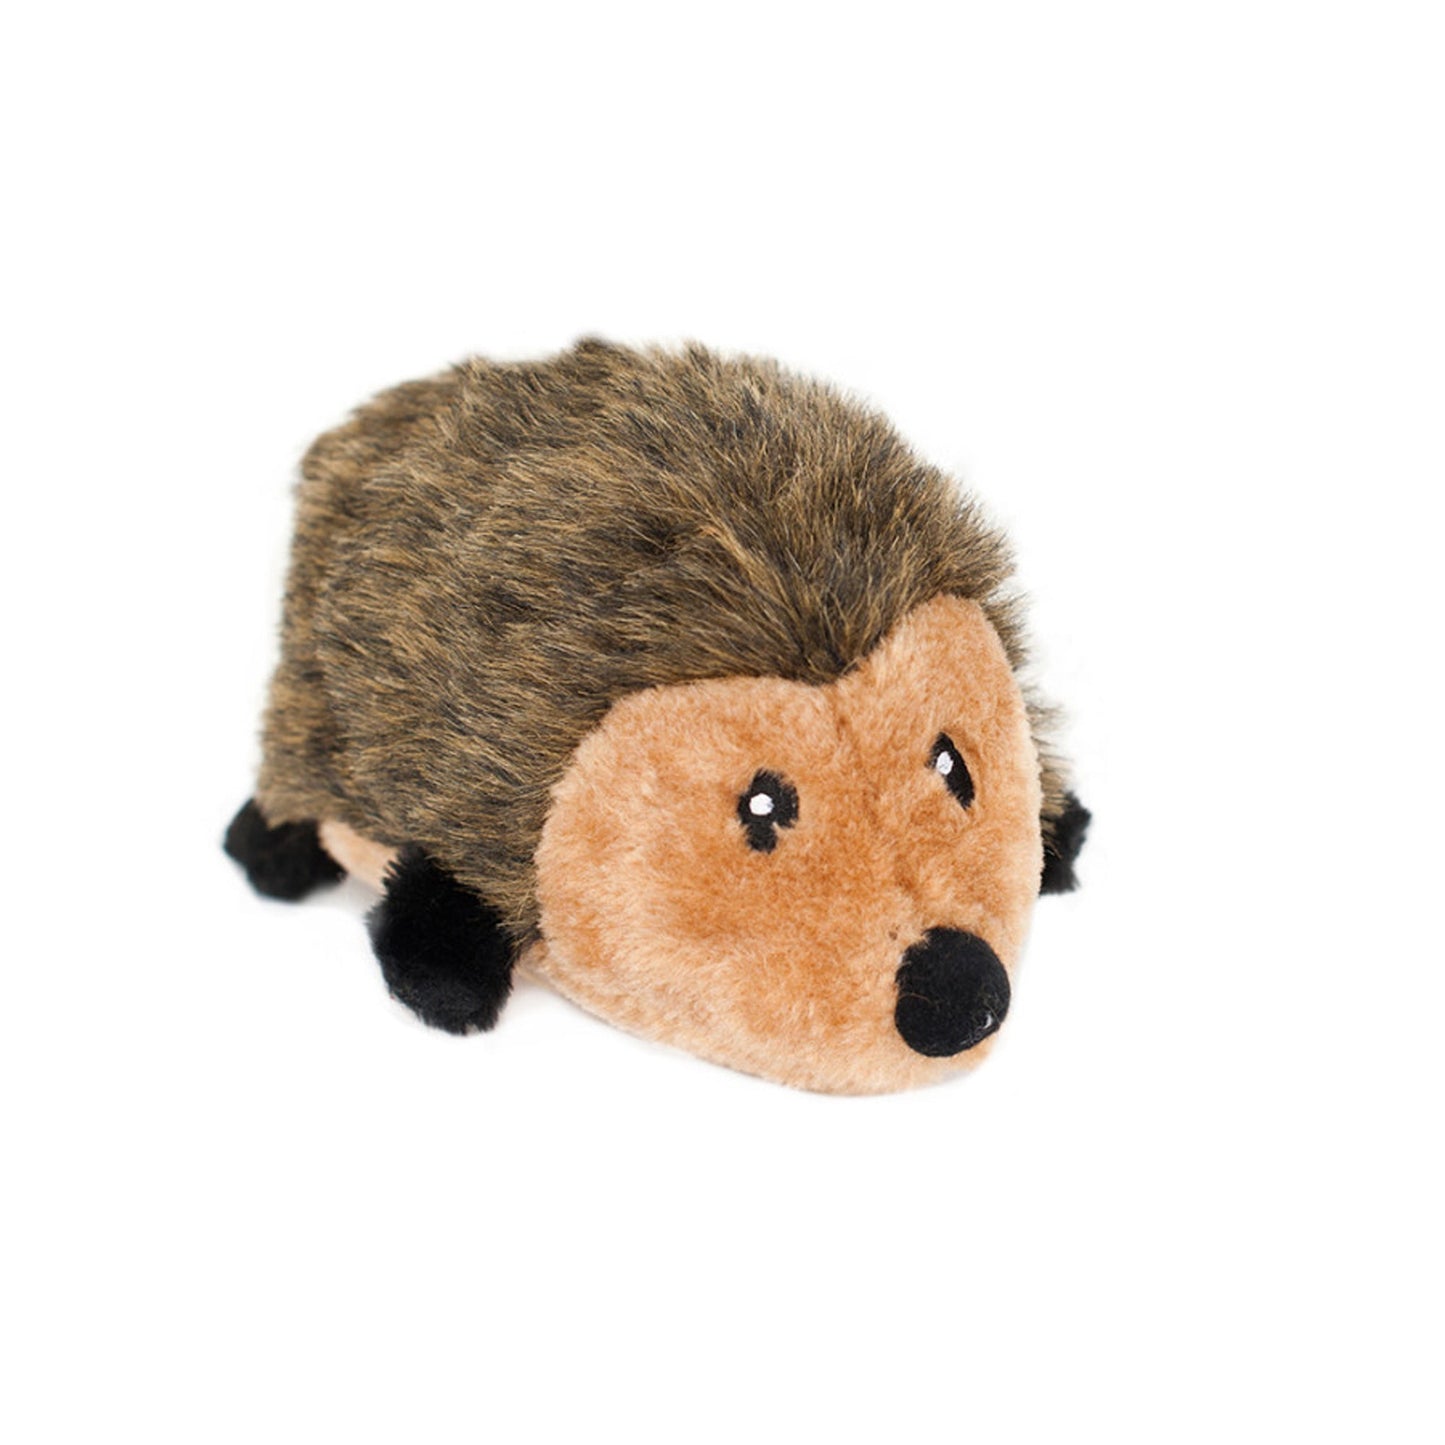 ZippyPaws Hedgehog Dog Toy 1ea/LG